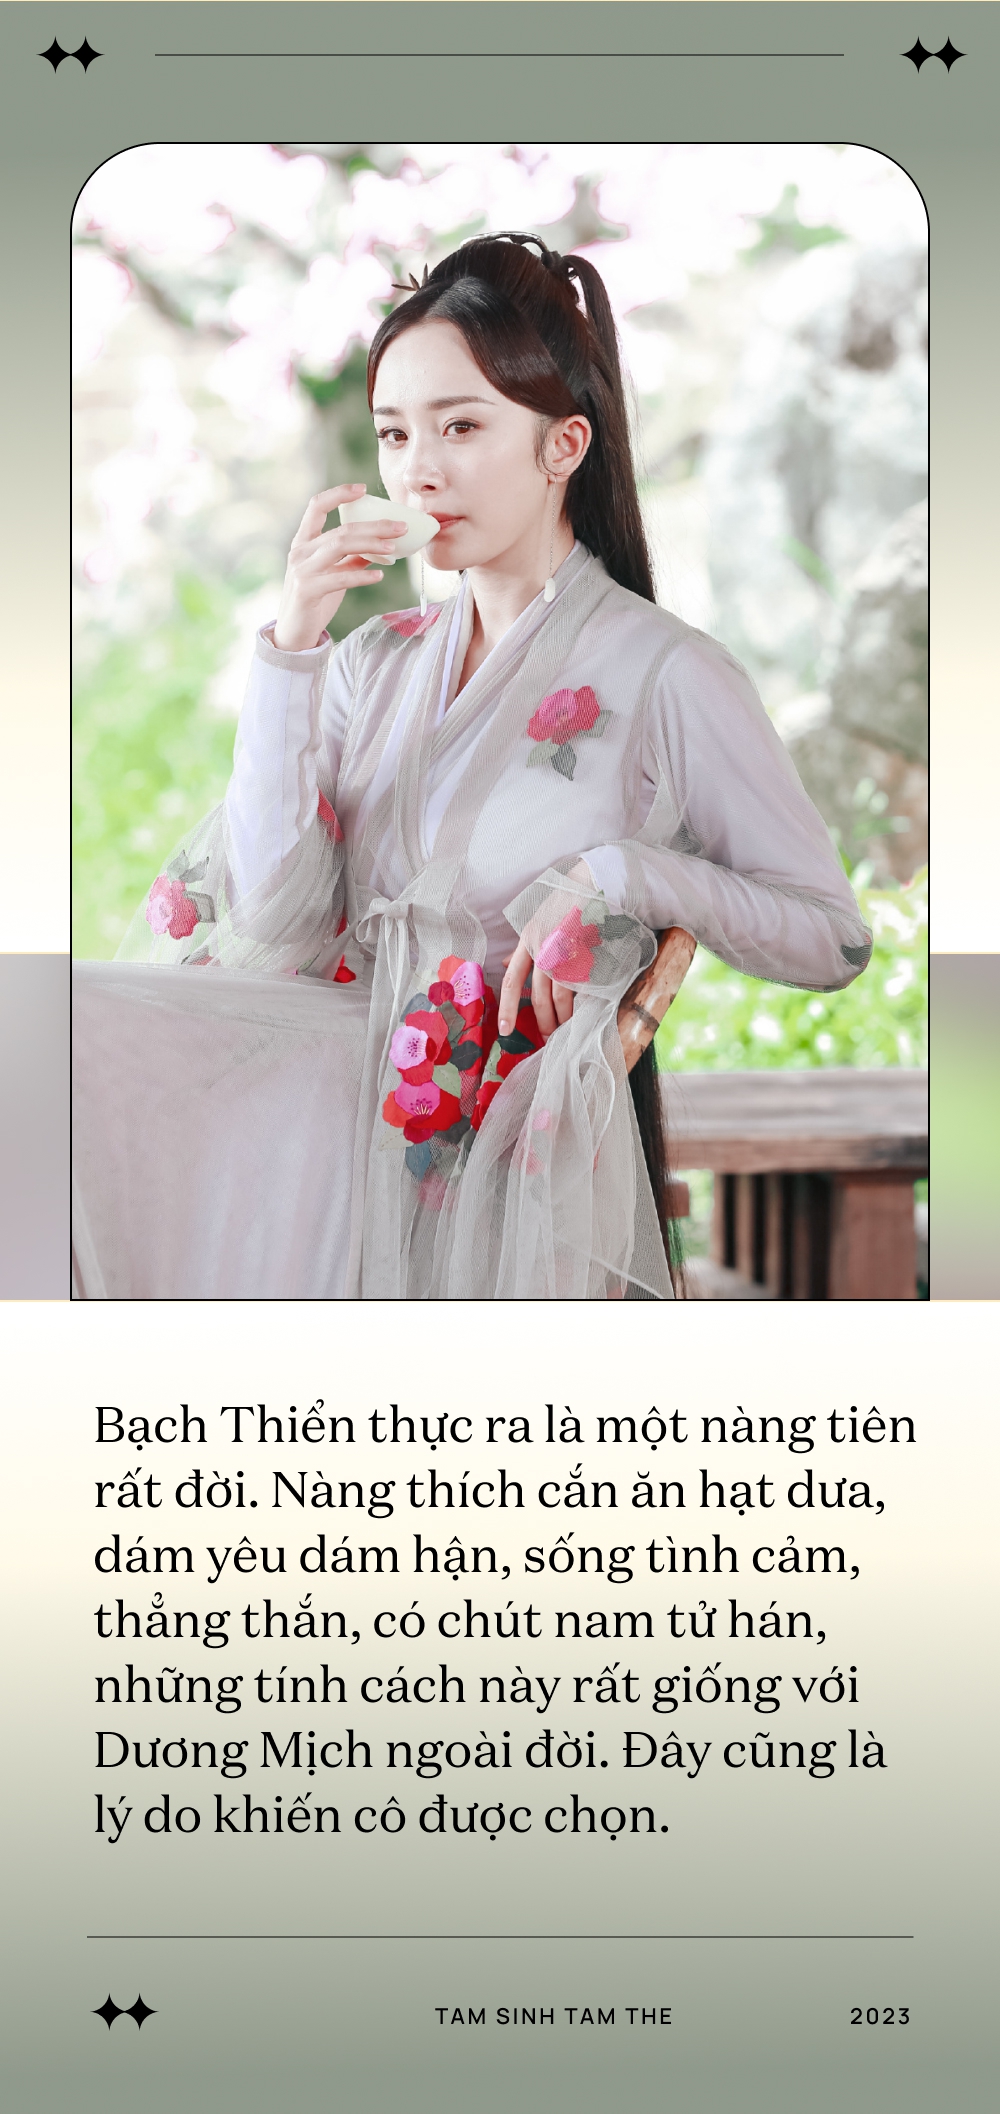 Thâm cung bí sử Thập lý đào hoa - bộ phim khiến Dương Mịch trở mặt với Đường Yên, lộ phốt ở trường quay - Ảnh 3.